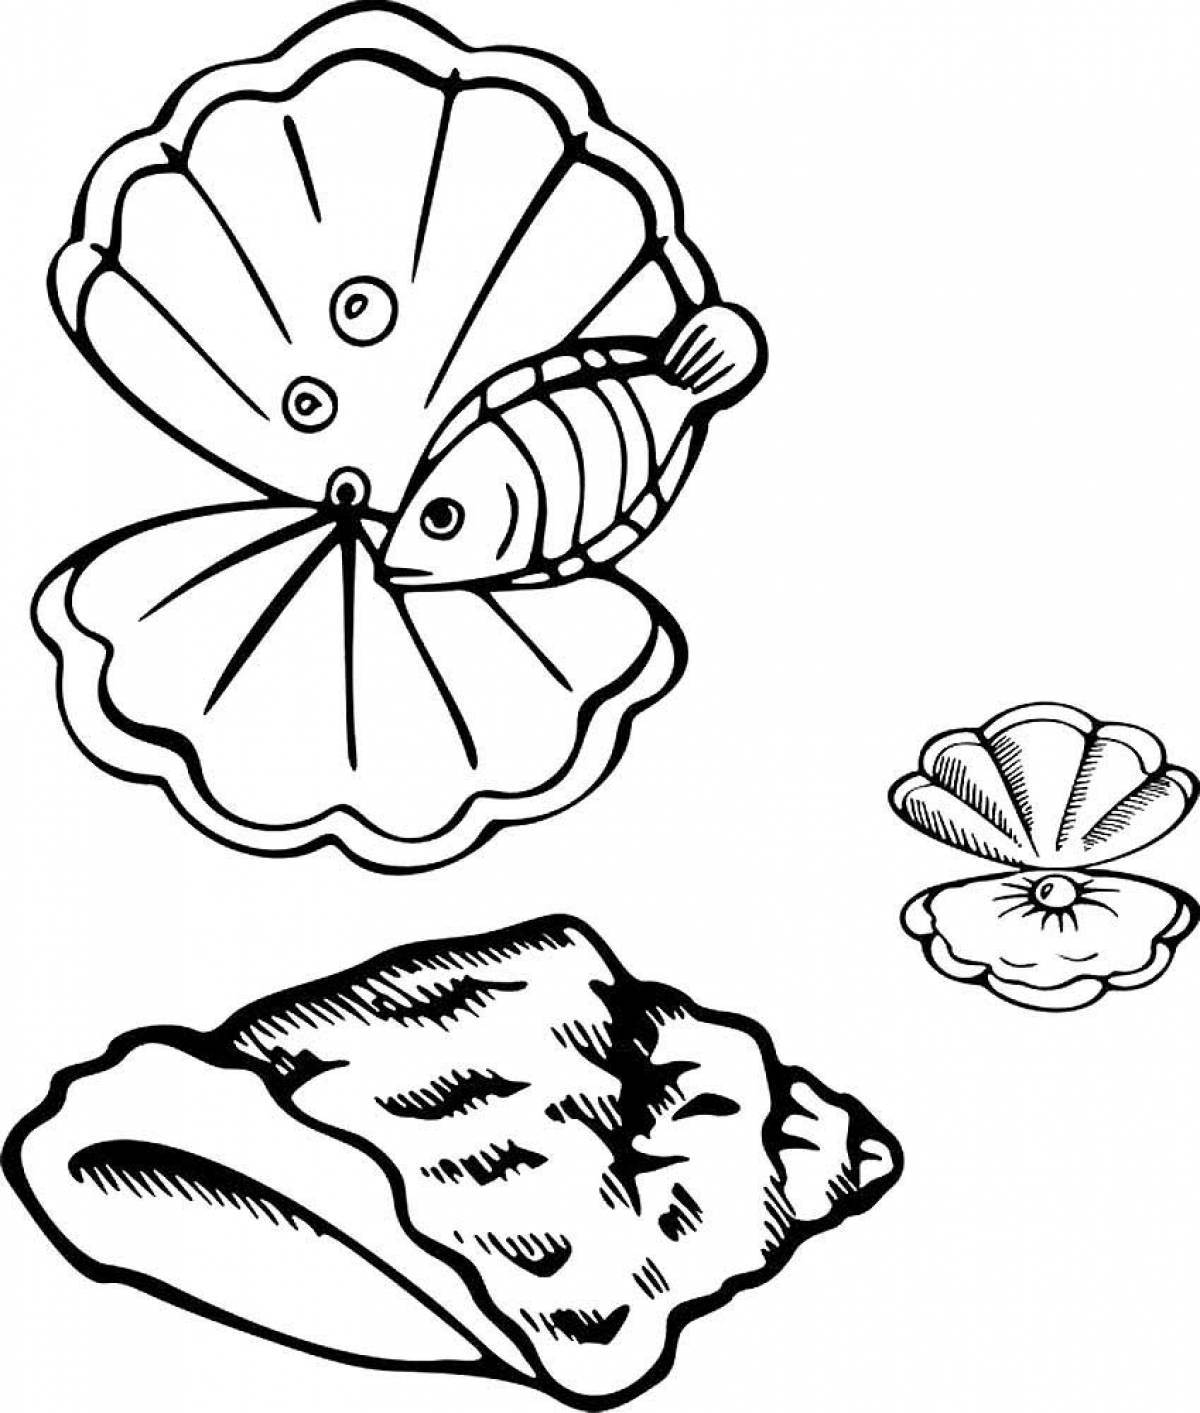 Shells and fish